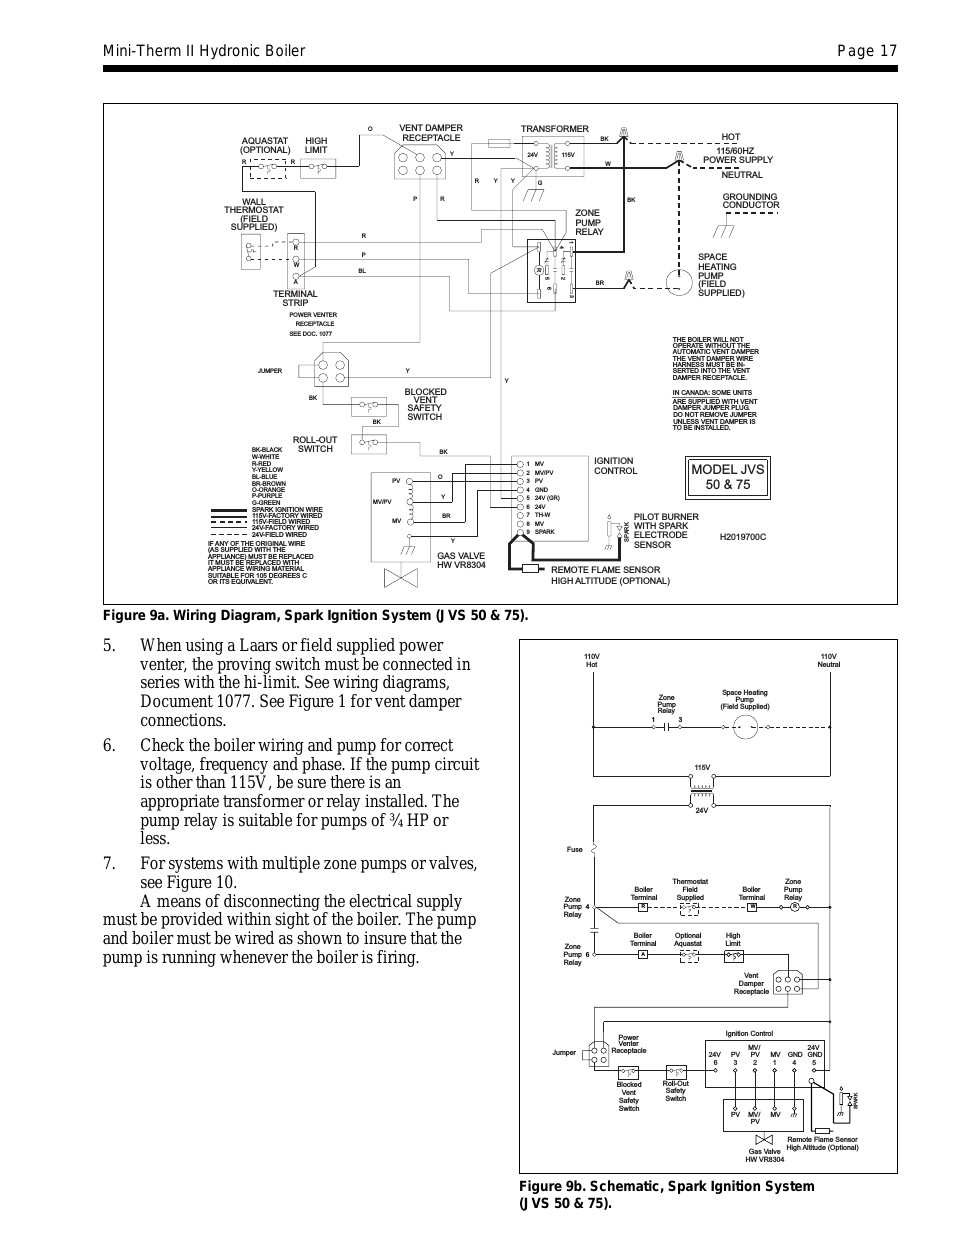 Automatic Damper Wiring Diagram - Wiring Diagram Schema